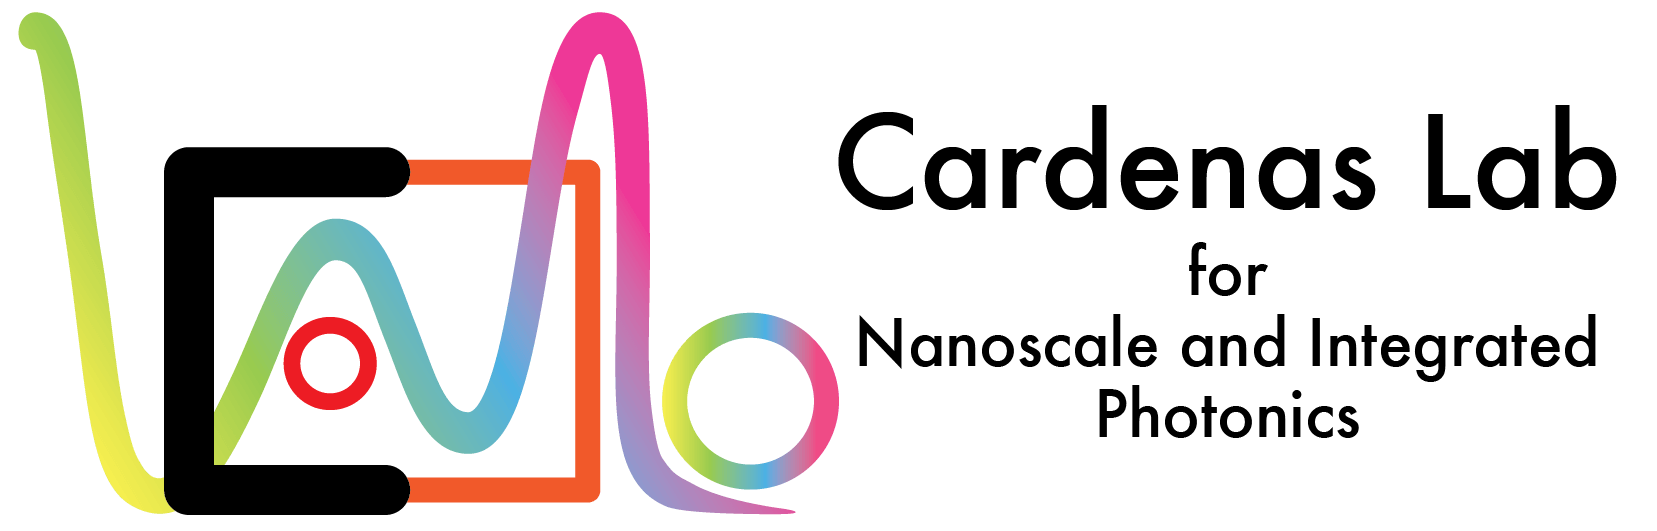 Cardenas Logo - Cardenas Lab – Nanoscale and Integrated Photonics